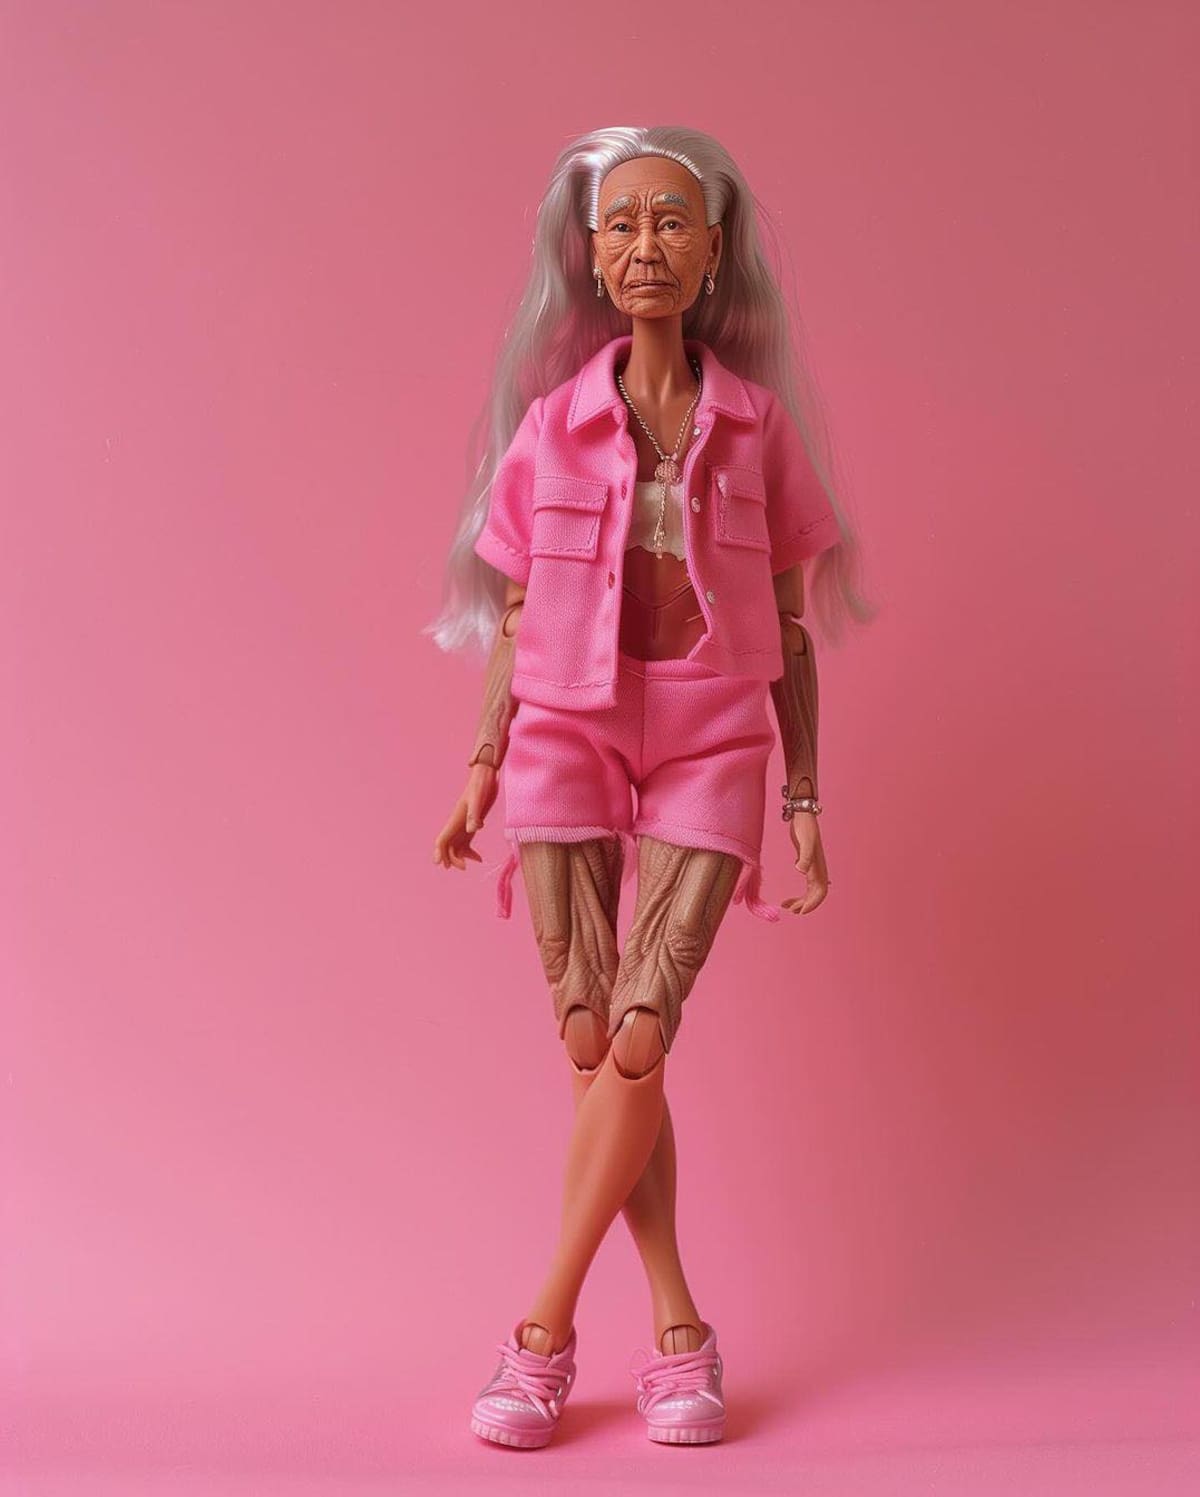 La evolución de Barbie muestra cómo la muñeca ha adaptado a los cambios sociales y culturales, promoviendo valores de igualdad e inclusión (Instagram)